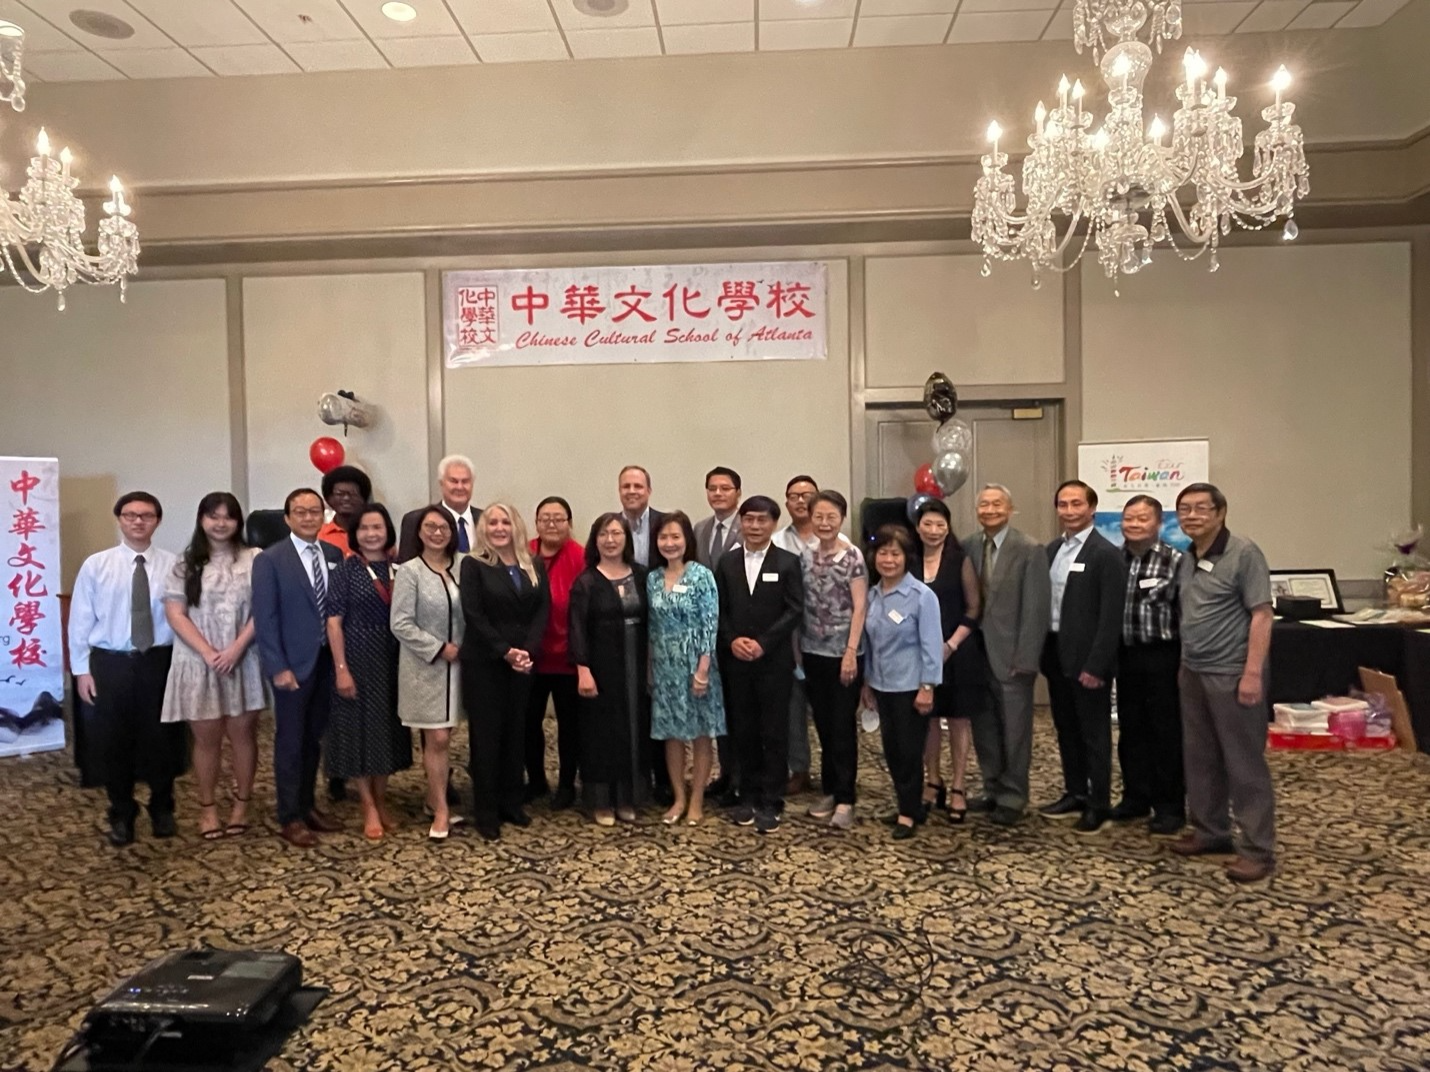 亞特蘭大中華文化學校25週年慶典暨2022年畢業典禮隆重舉行圖片